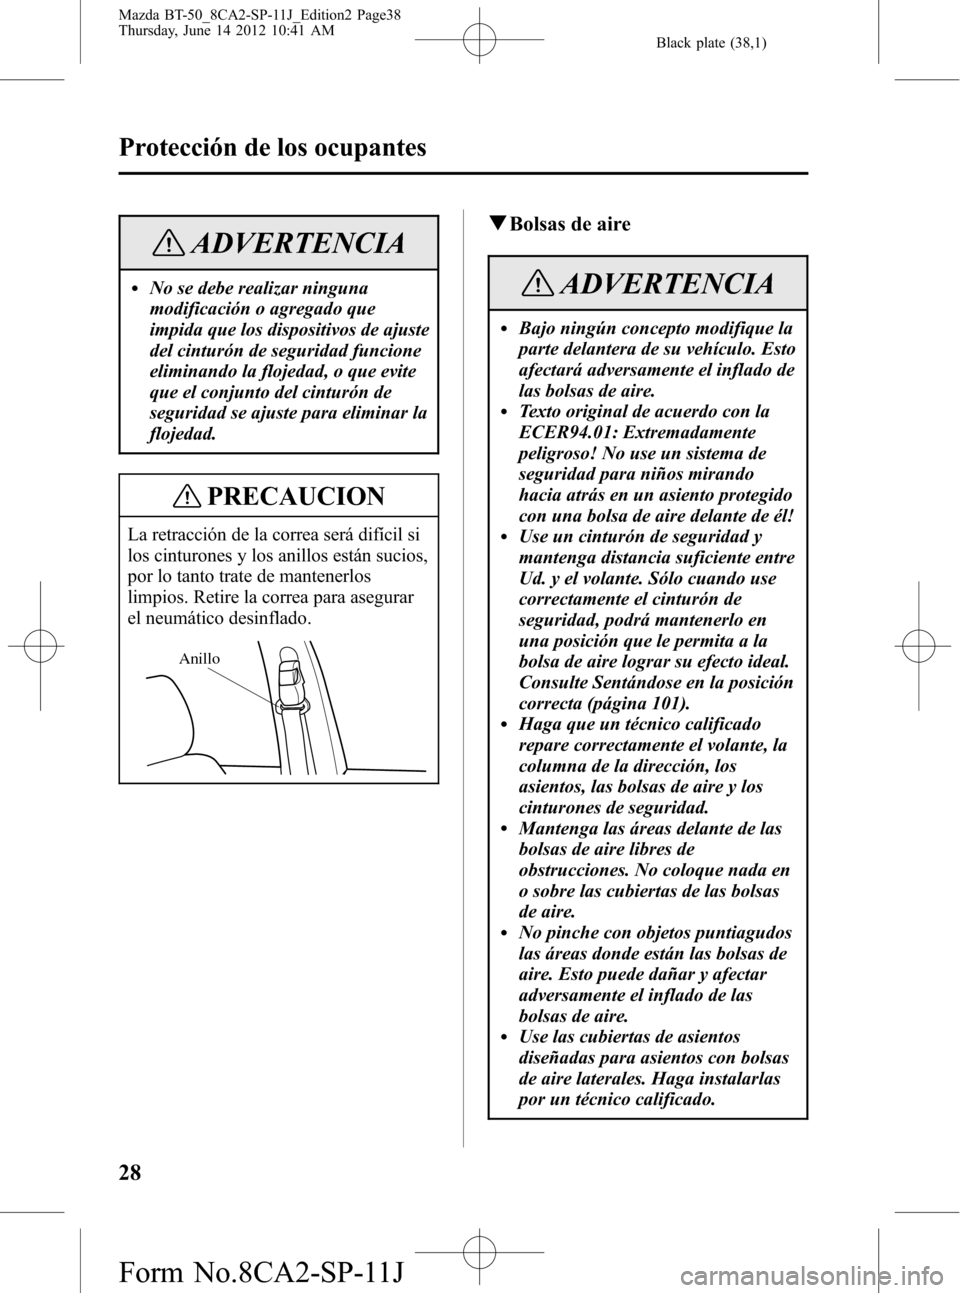 MAZDA MODEL BT-50 2015  Manual del propietario (in Spanish) Black plate (38,1)
ADVERTENCIA
lNo se debe realizar ninguna
modificación o agregado que
impida que los dispositivos de ajuste
del cinturón de seguridad funcione
eliminando la flojedad, o que evite
q